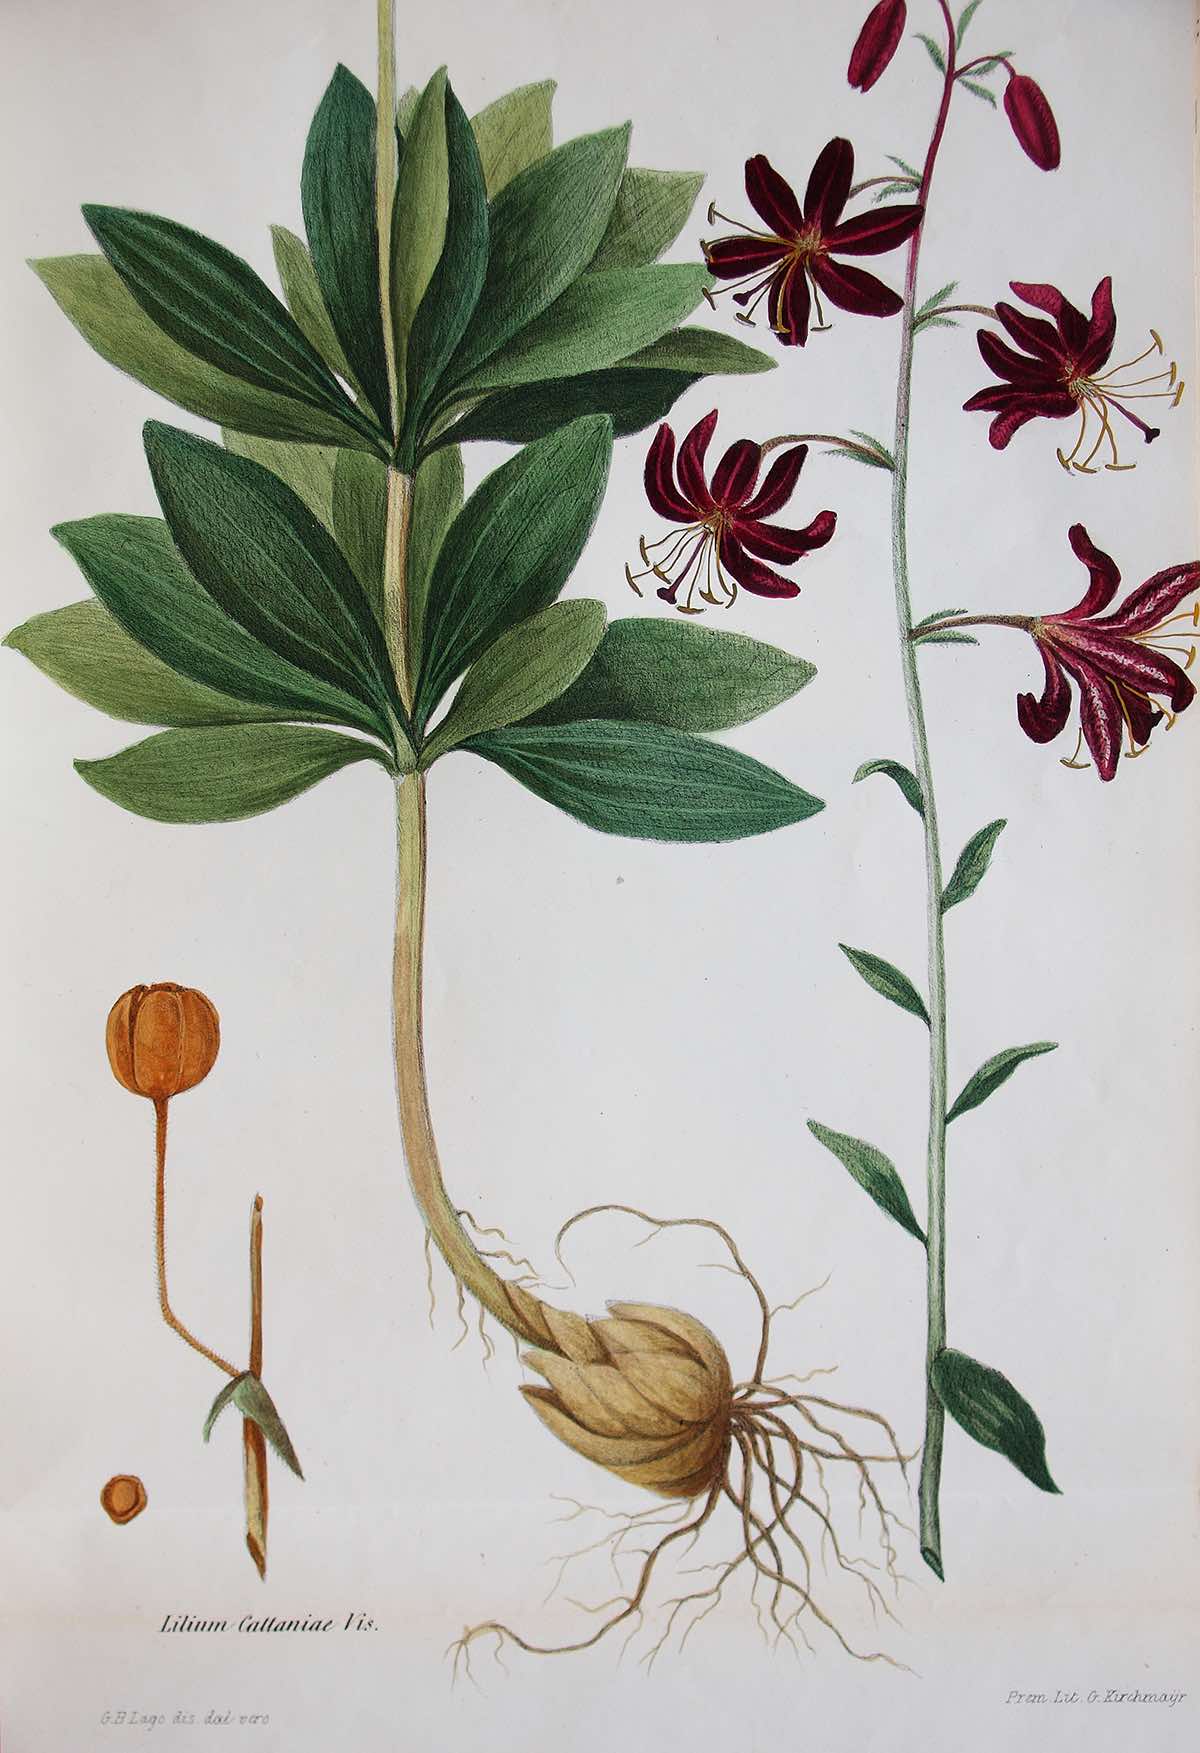 Lillium cattaniae, botanical illustration